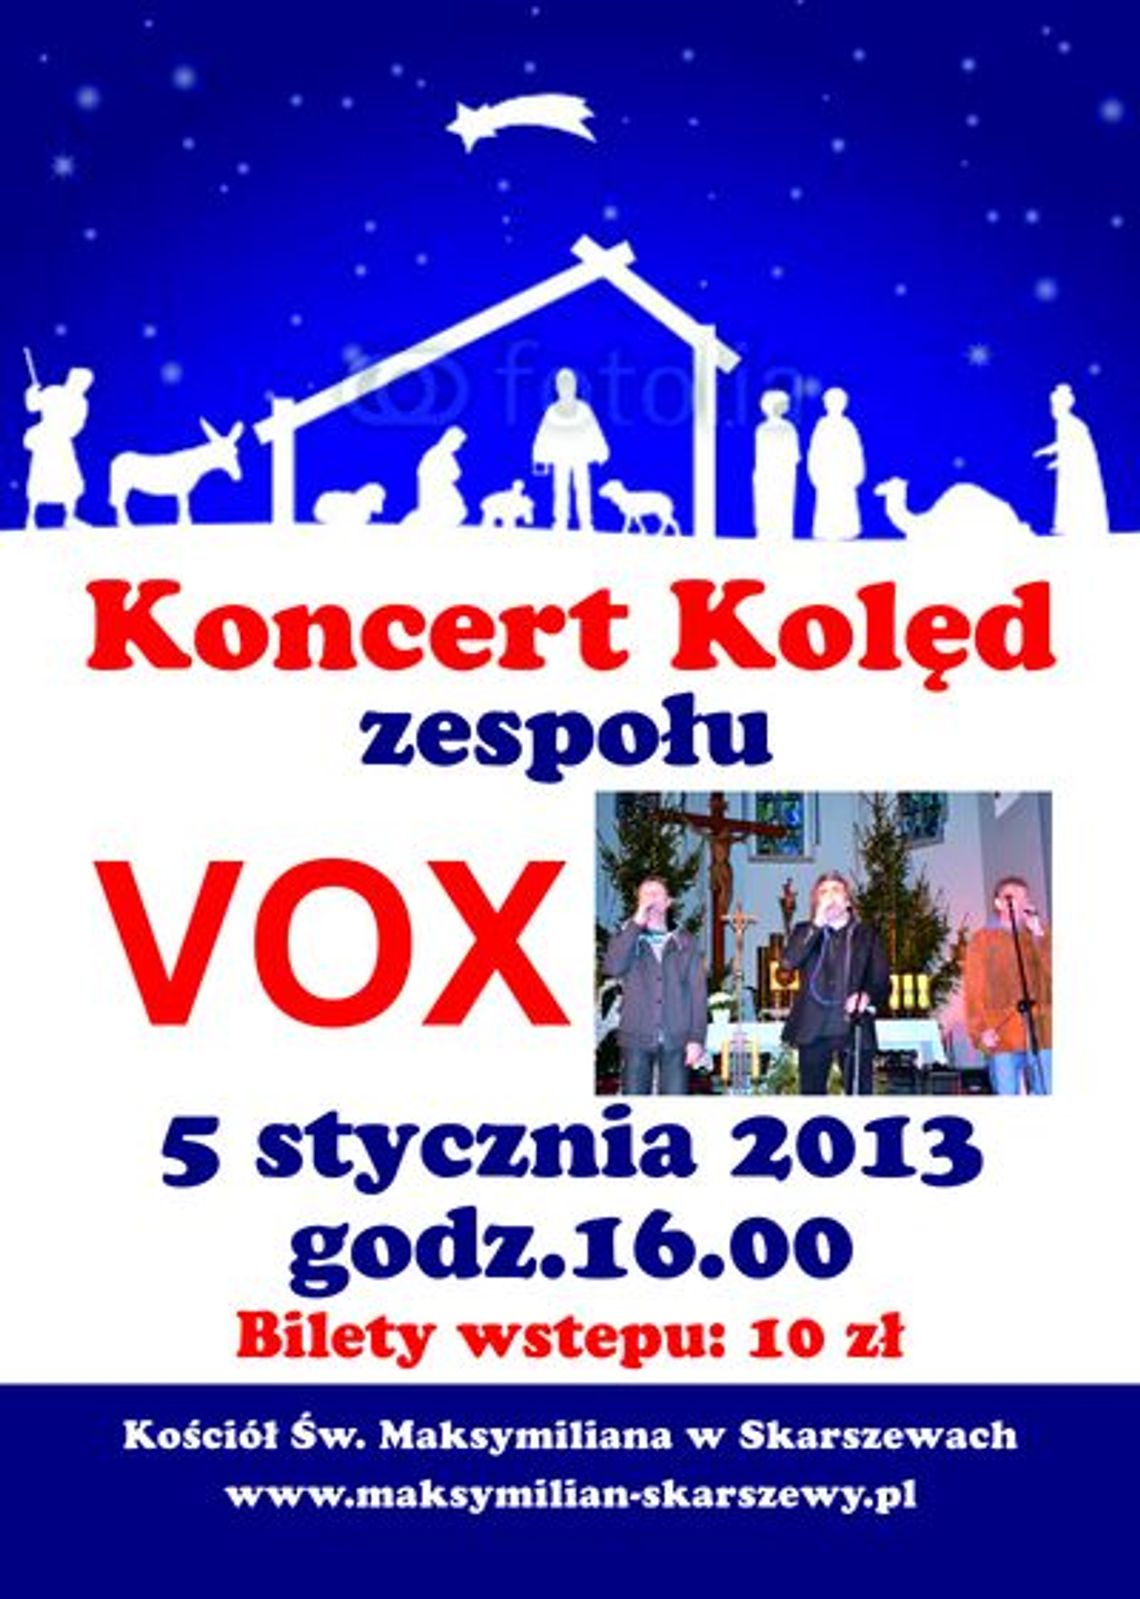 Koncert kolęd - VOX  w Skarszewach